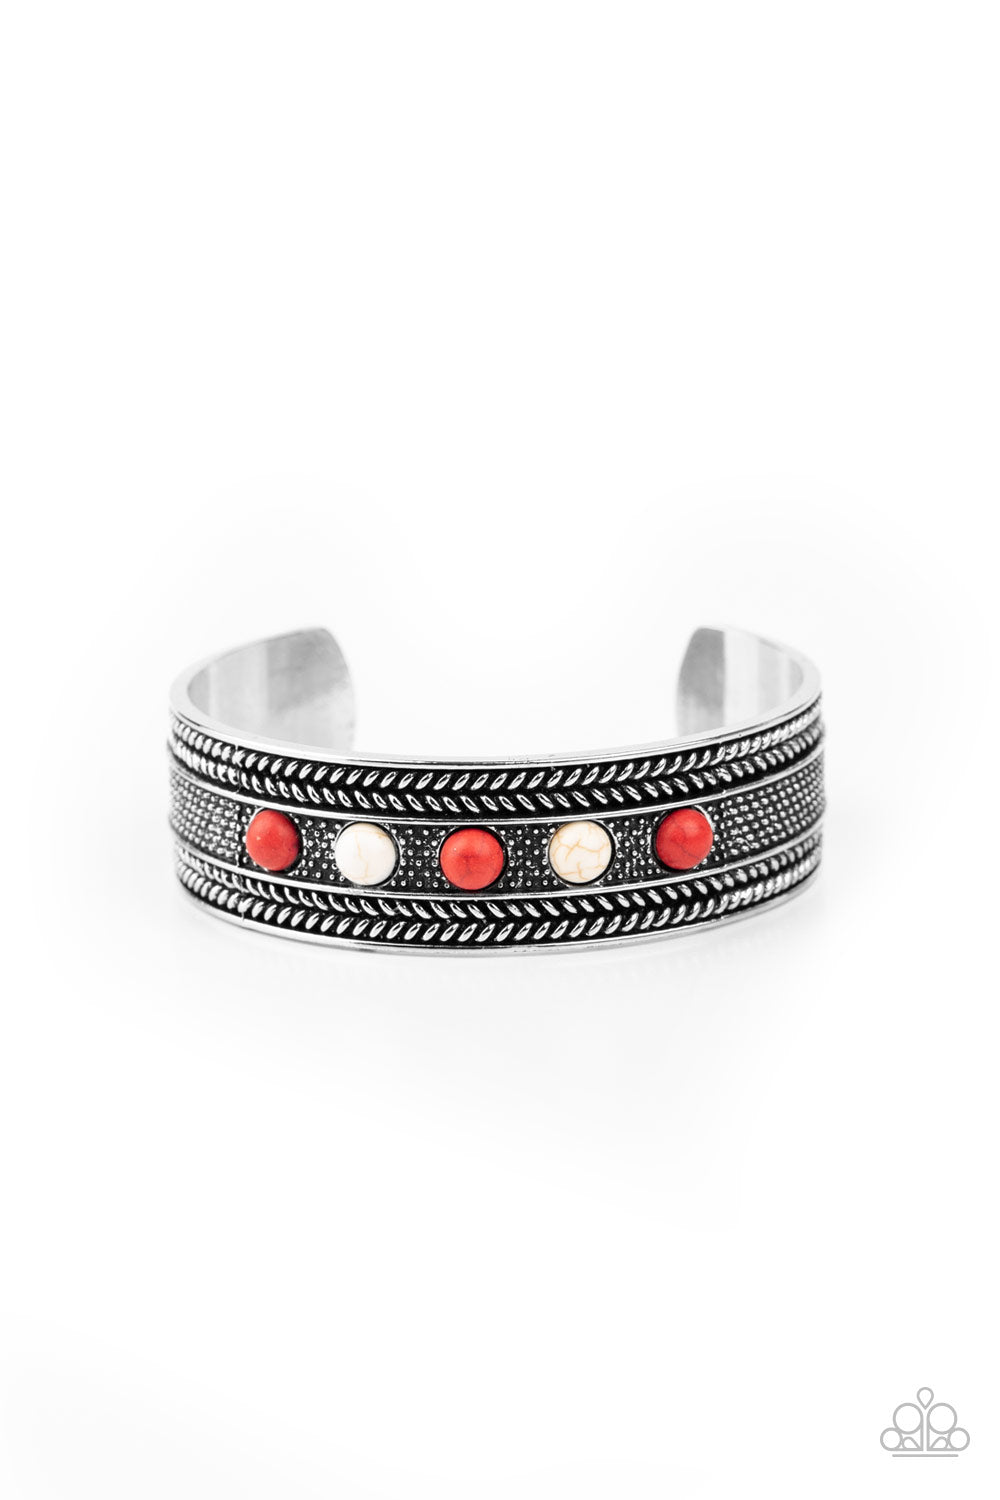 Quarry Quake - red - Paparazzi bracelet